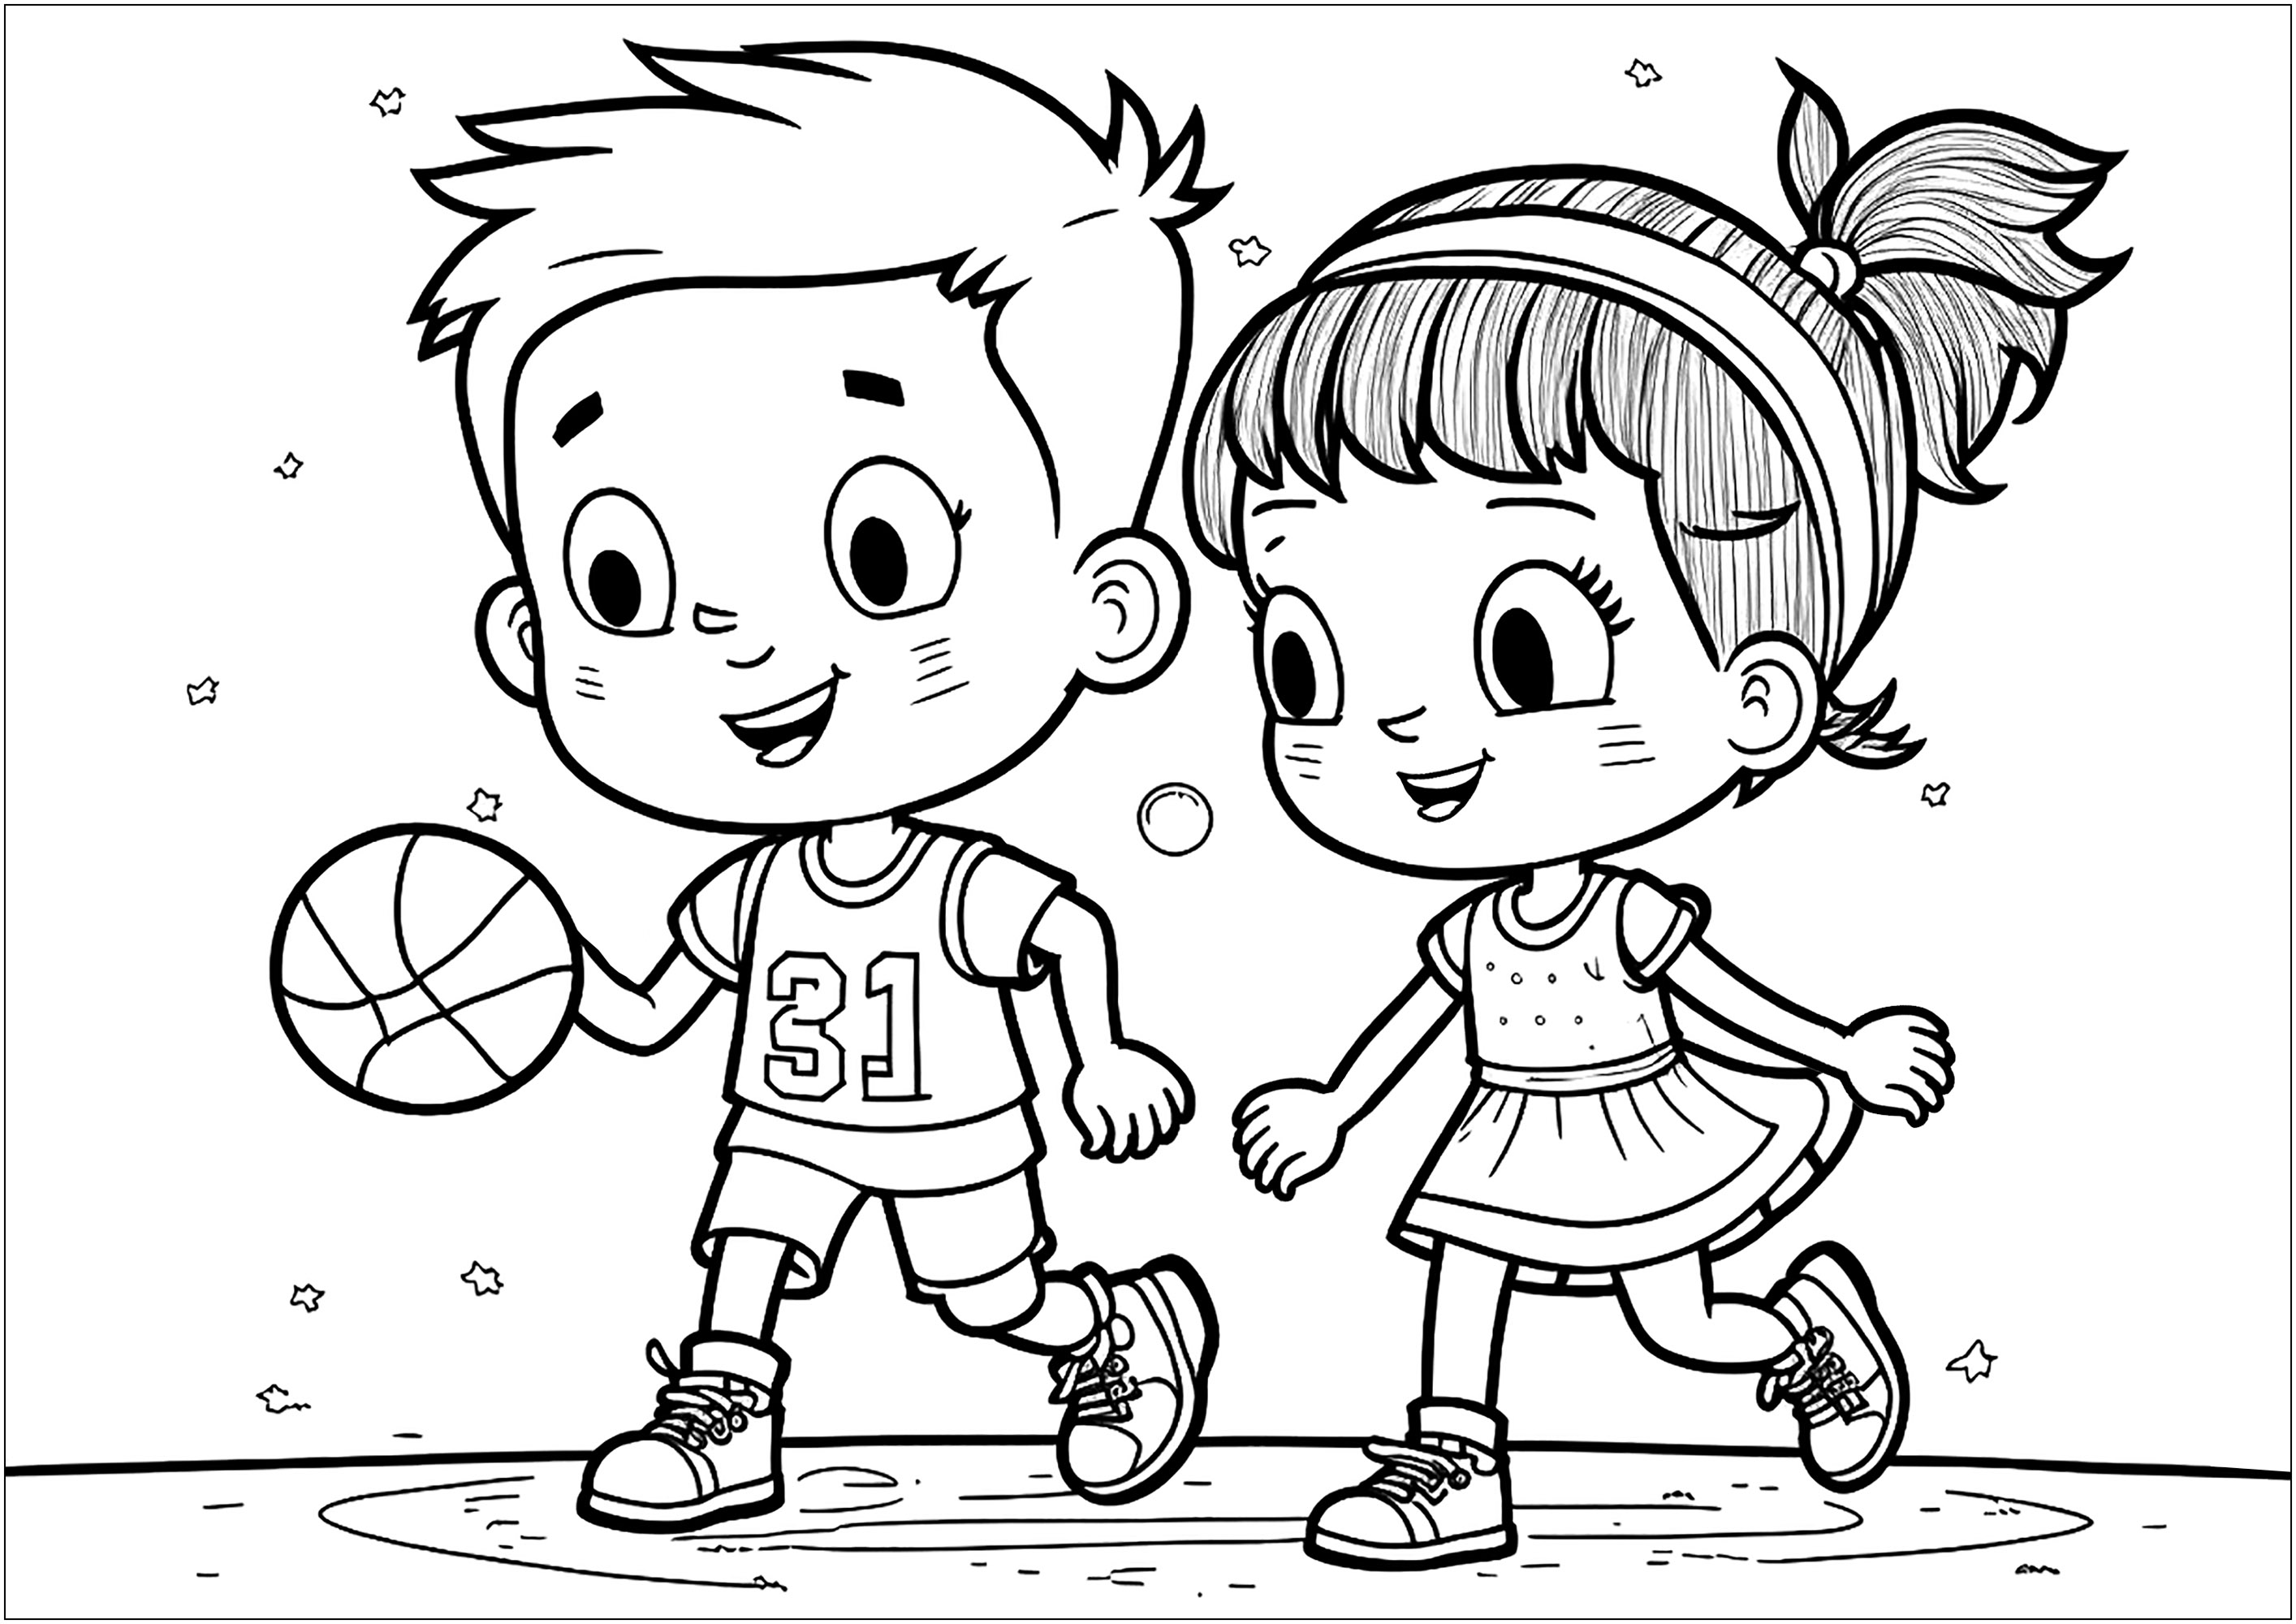 Um rapaz e uma rapariga a jogar Basquetebol juntos. As duas crianças estão a sorrir e vestidas com roupas desportivas que precisam de ser coloridas